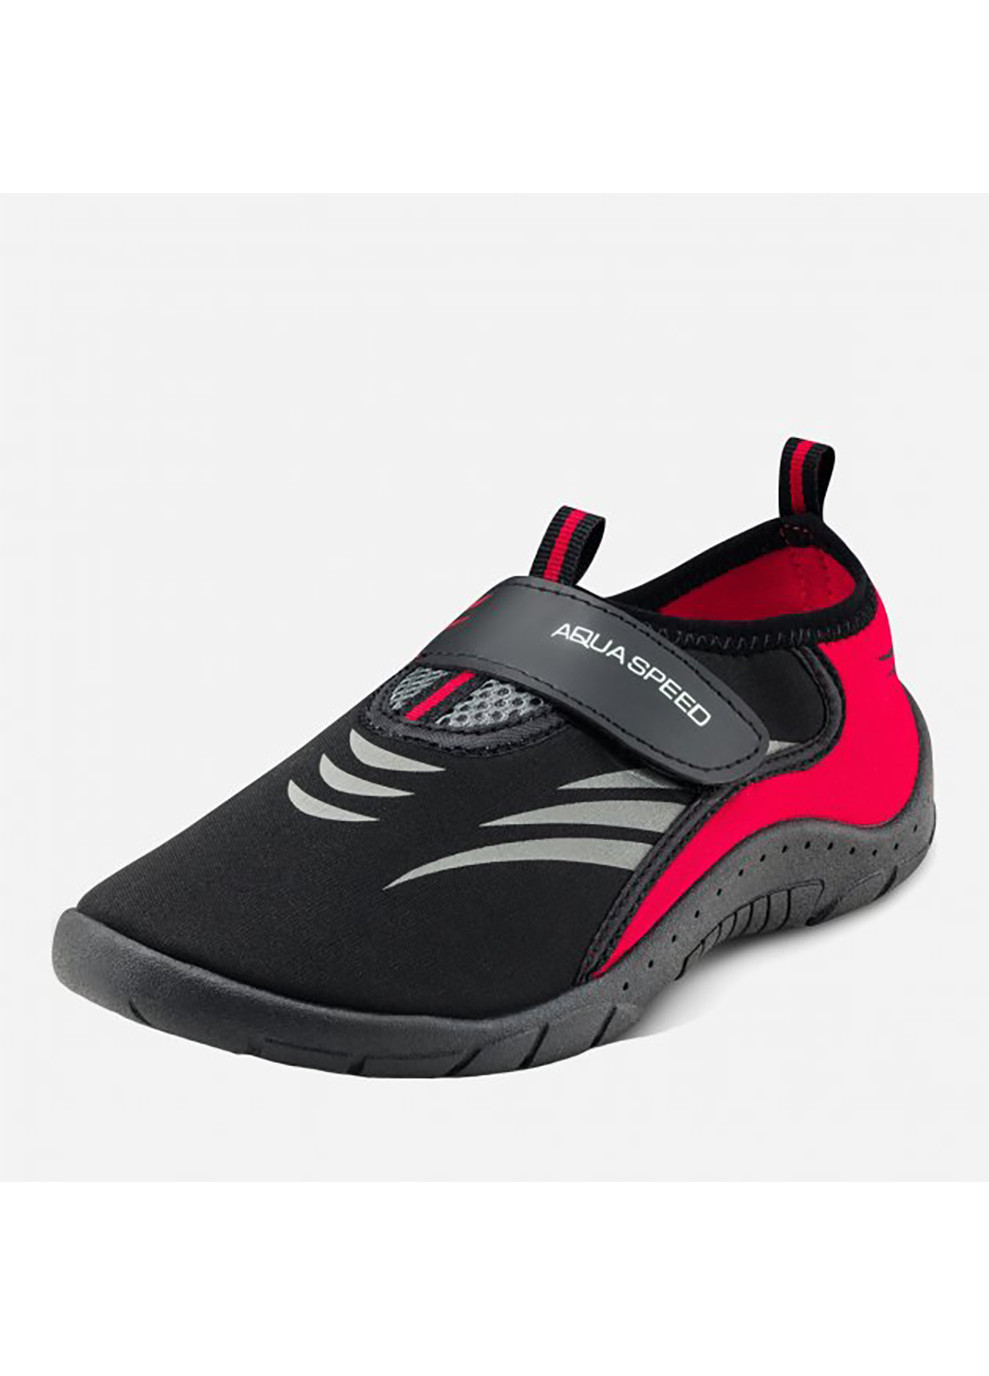 Черные аквашузы aqua shoe model 27d 7625 черный, серый, красный Aqua Speed